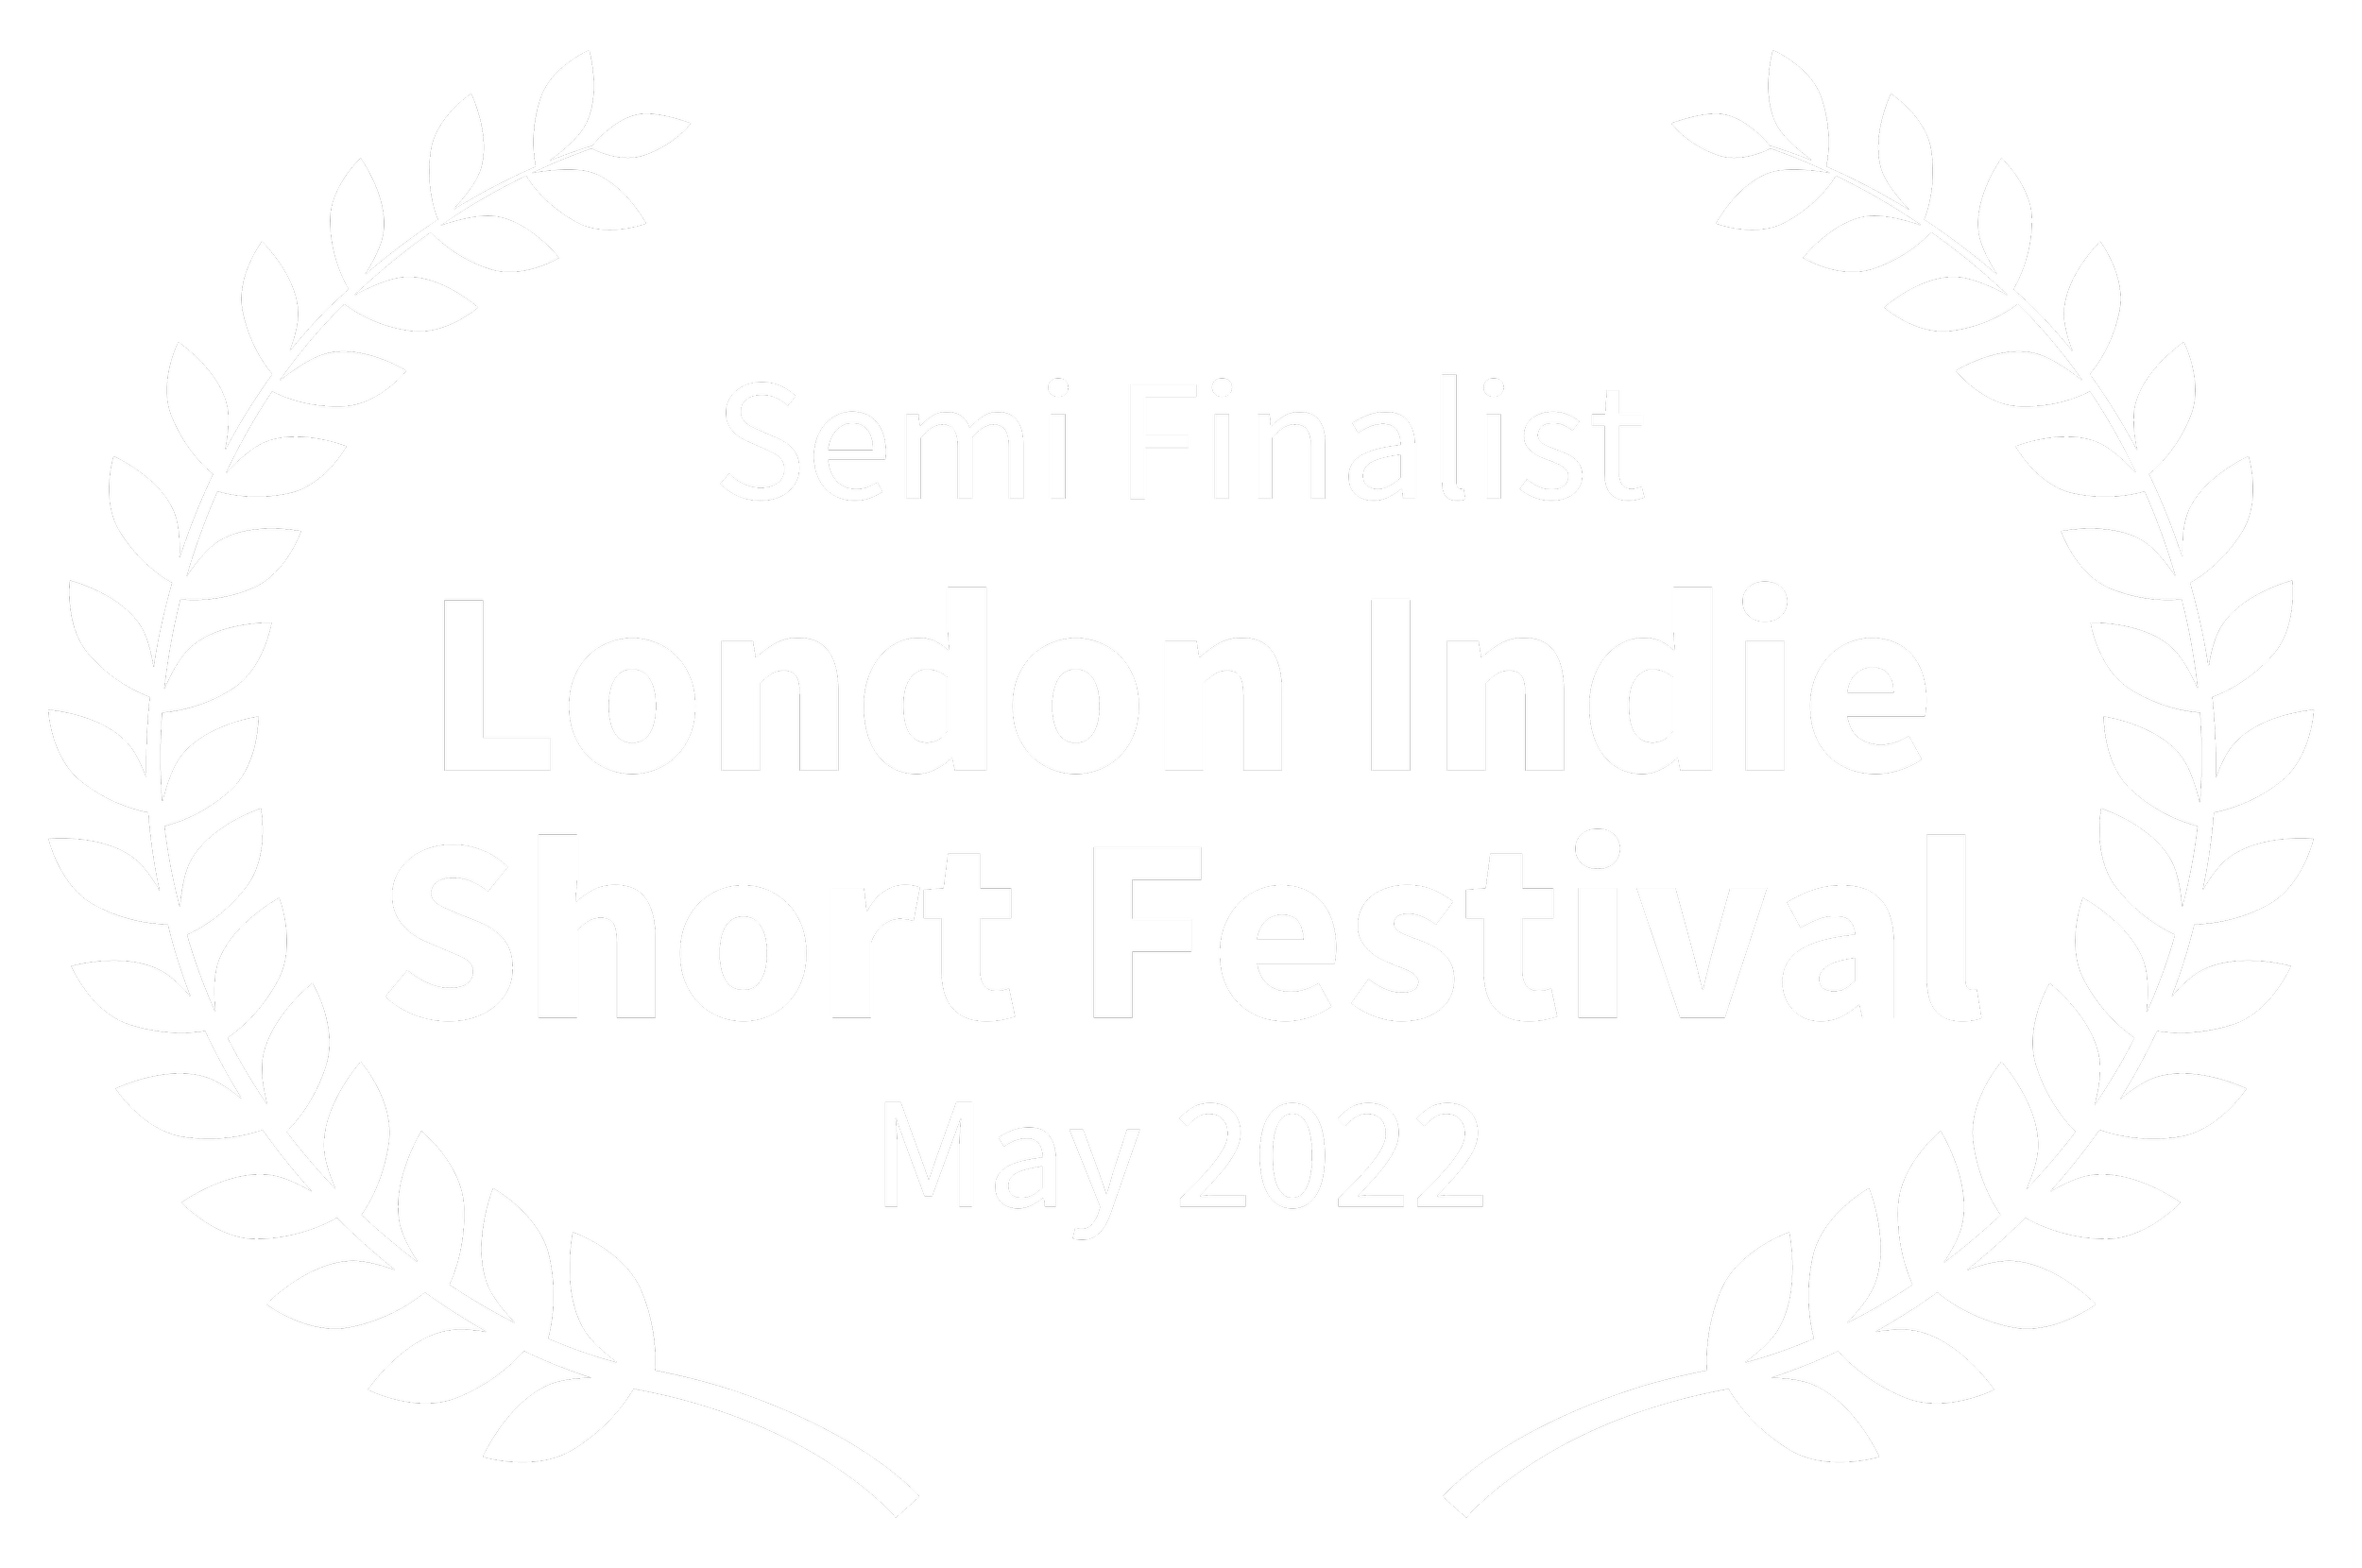 SemiFinalist-LondonIndieShortFestival-May2022.png